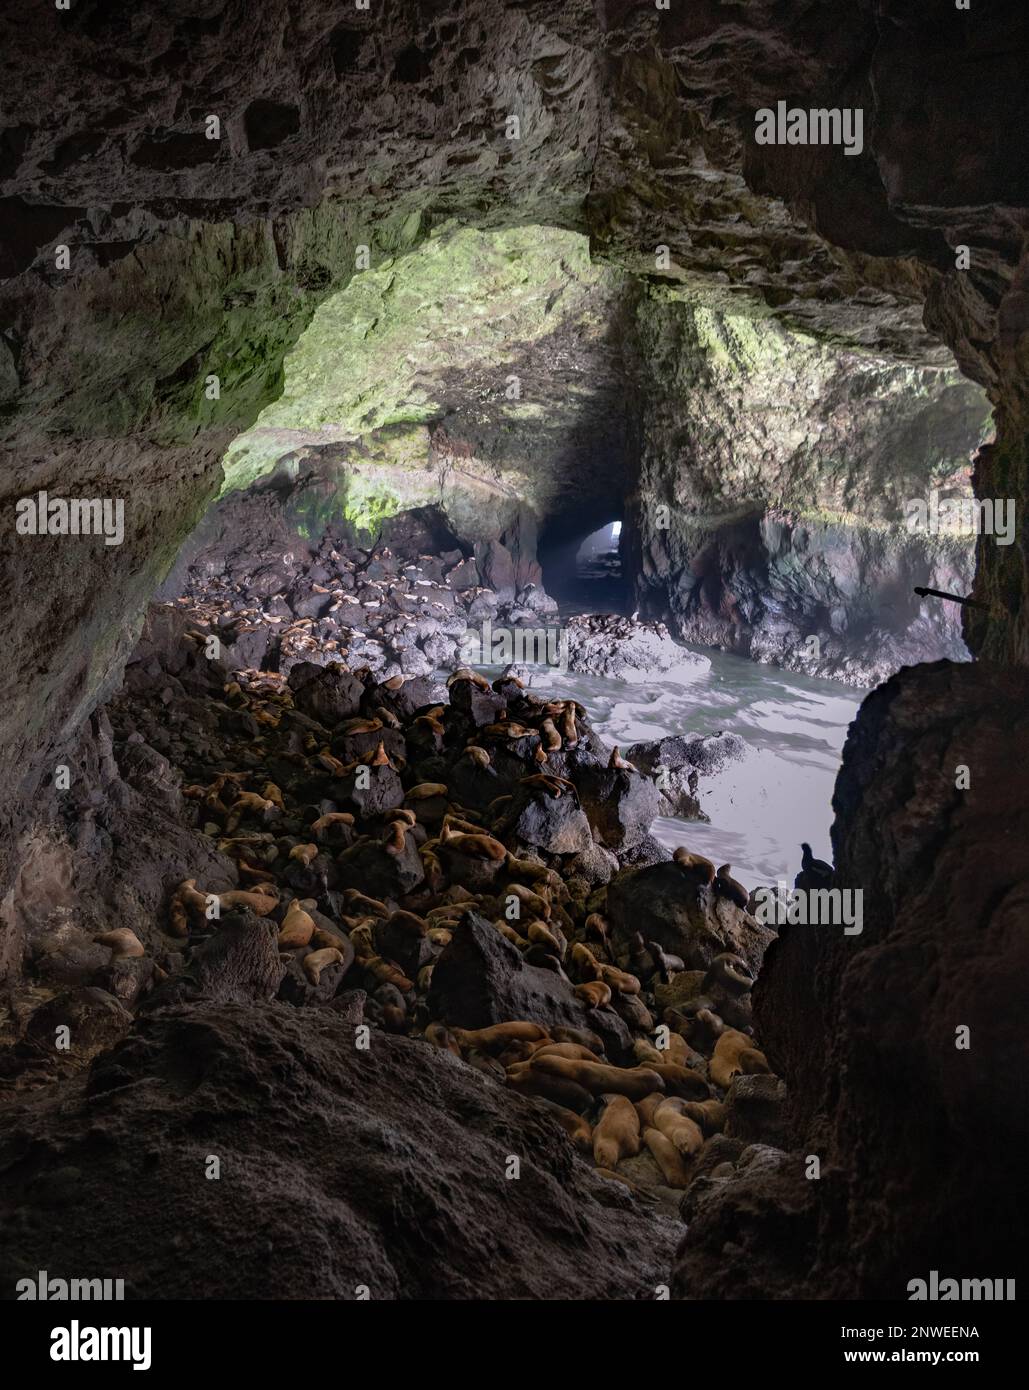 Eine Höhle voller Seelöwen in Oregon, Vereinigte Staaten von Amerika. Wilde Tiere, Beobachtung, Robben, Seelöwen, erstaunlich, Geschützt, Wildnis, Ozean. Stockfoto